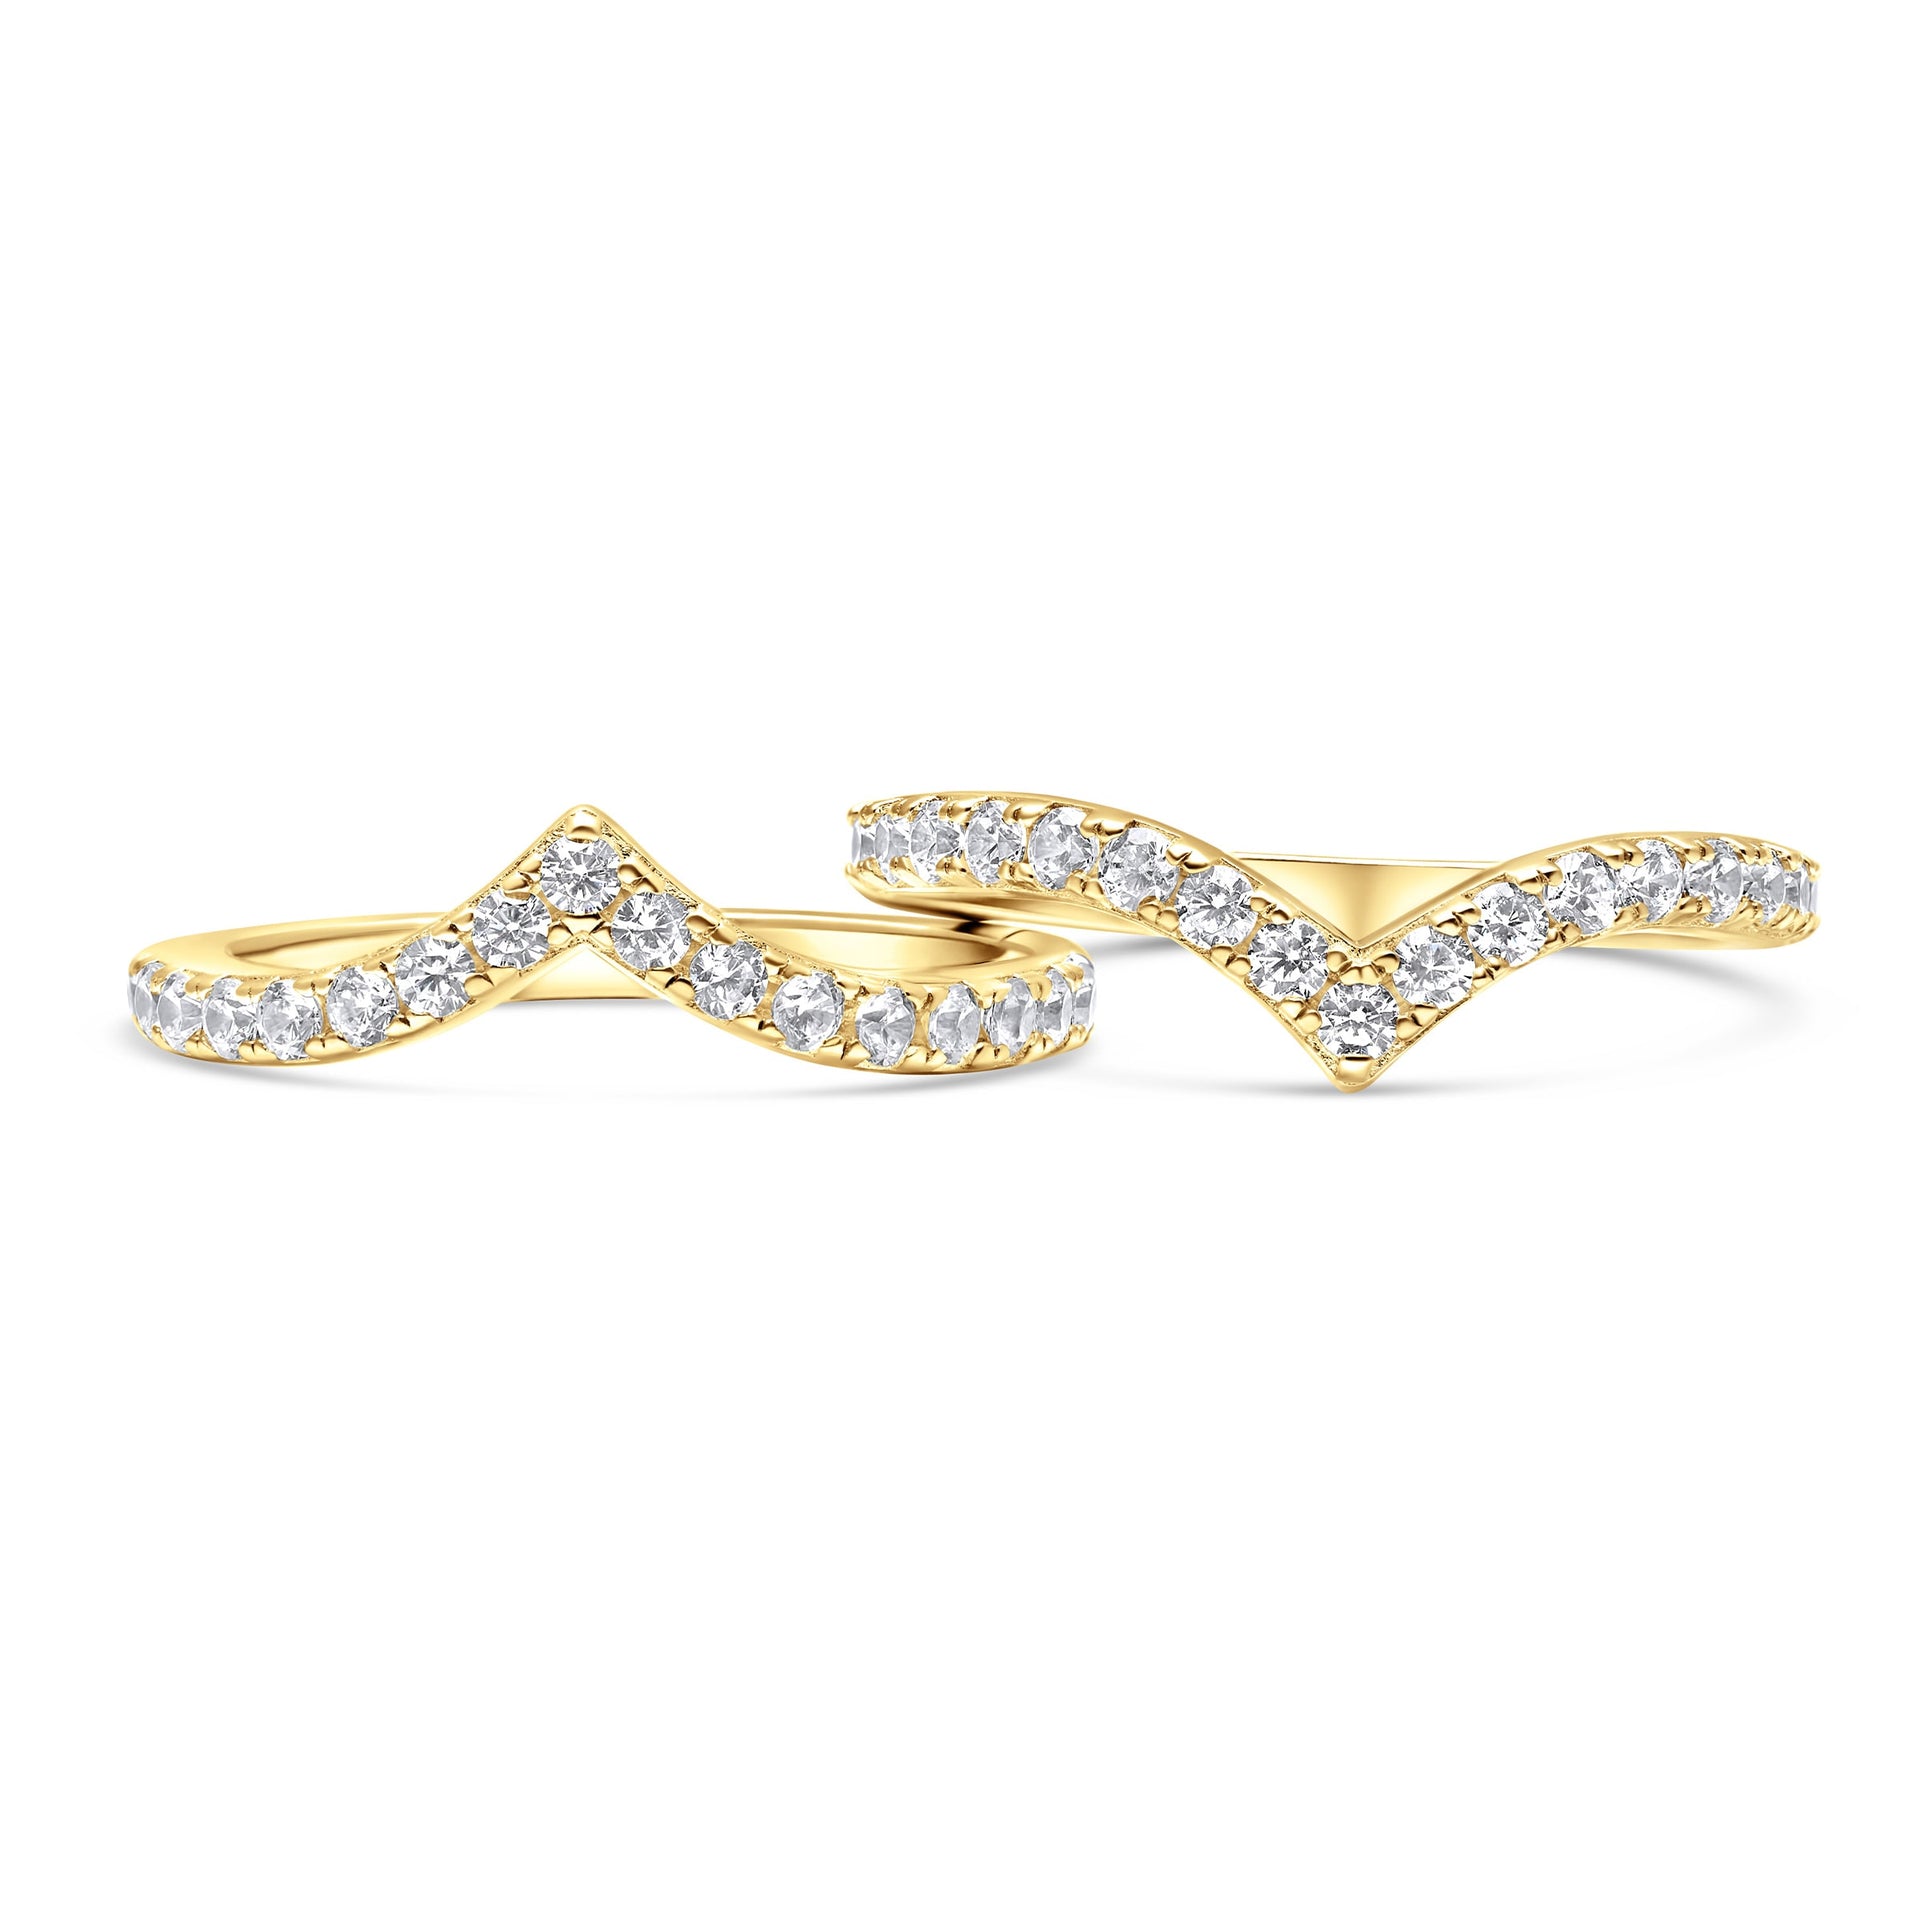 Modern gold wedding bands with unique v-shape detailing